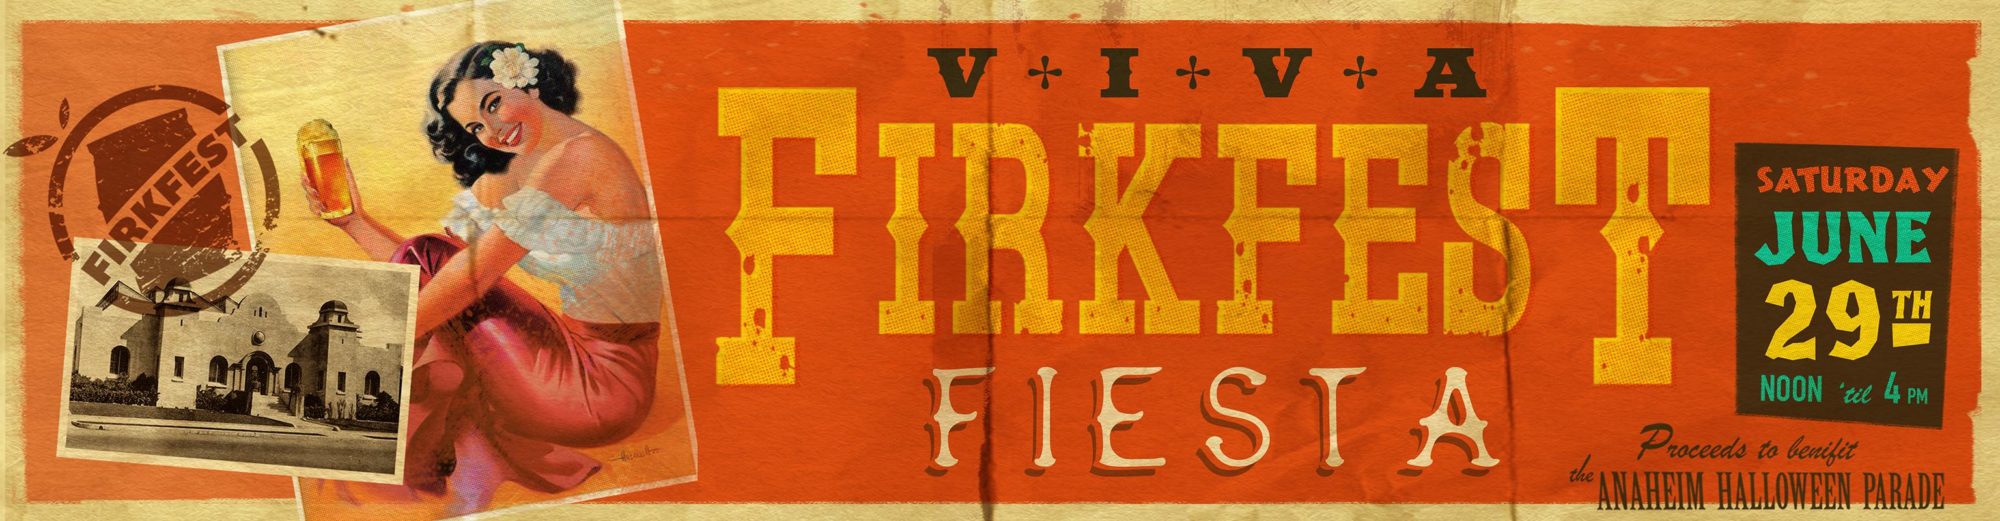 FirkFest